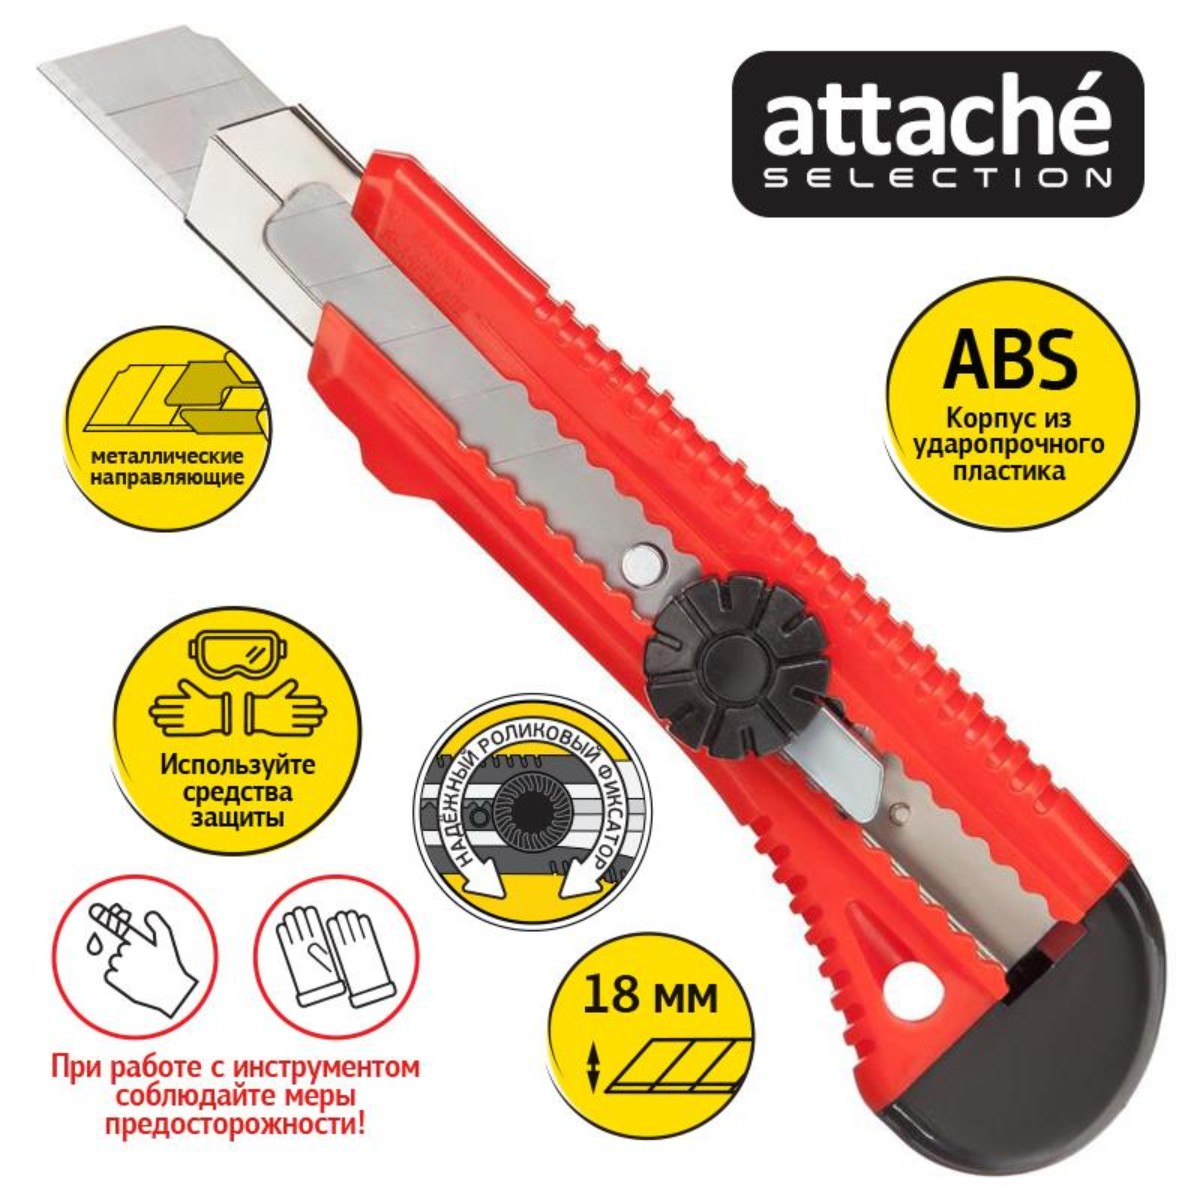 Канцелярский нож Attache универсальный Selection 18мм Twist lock 6 шт - фото 2